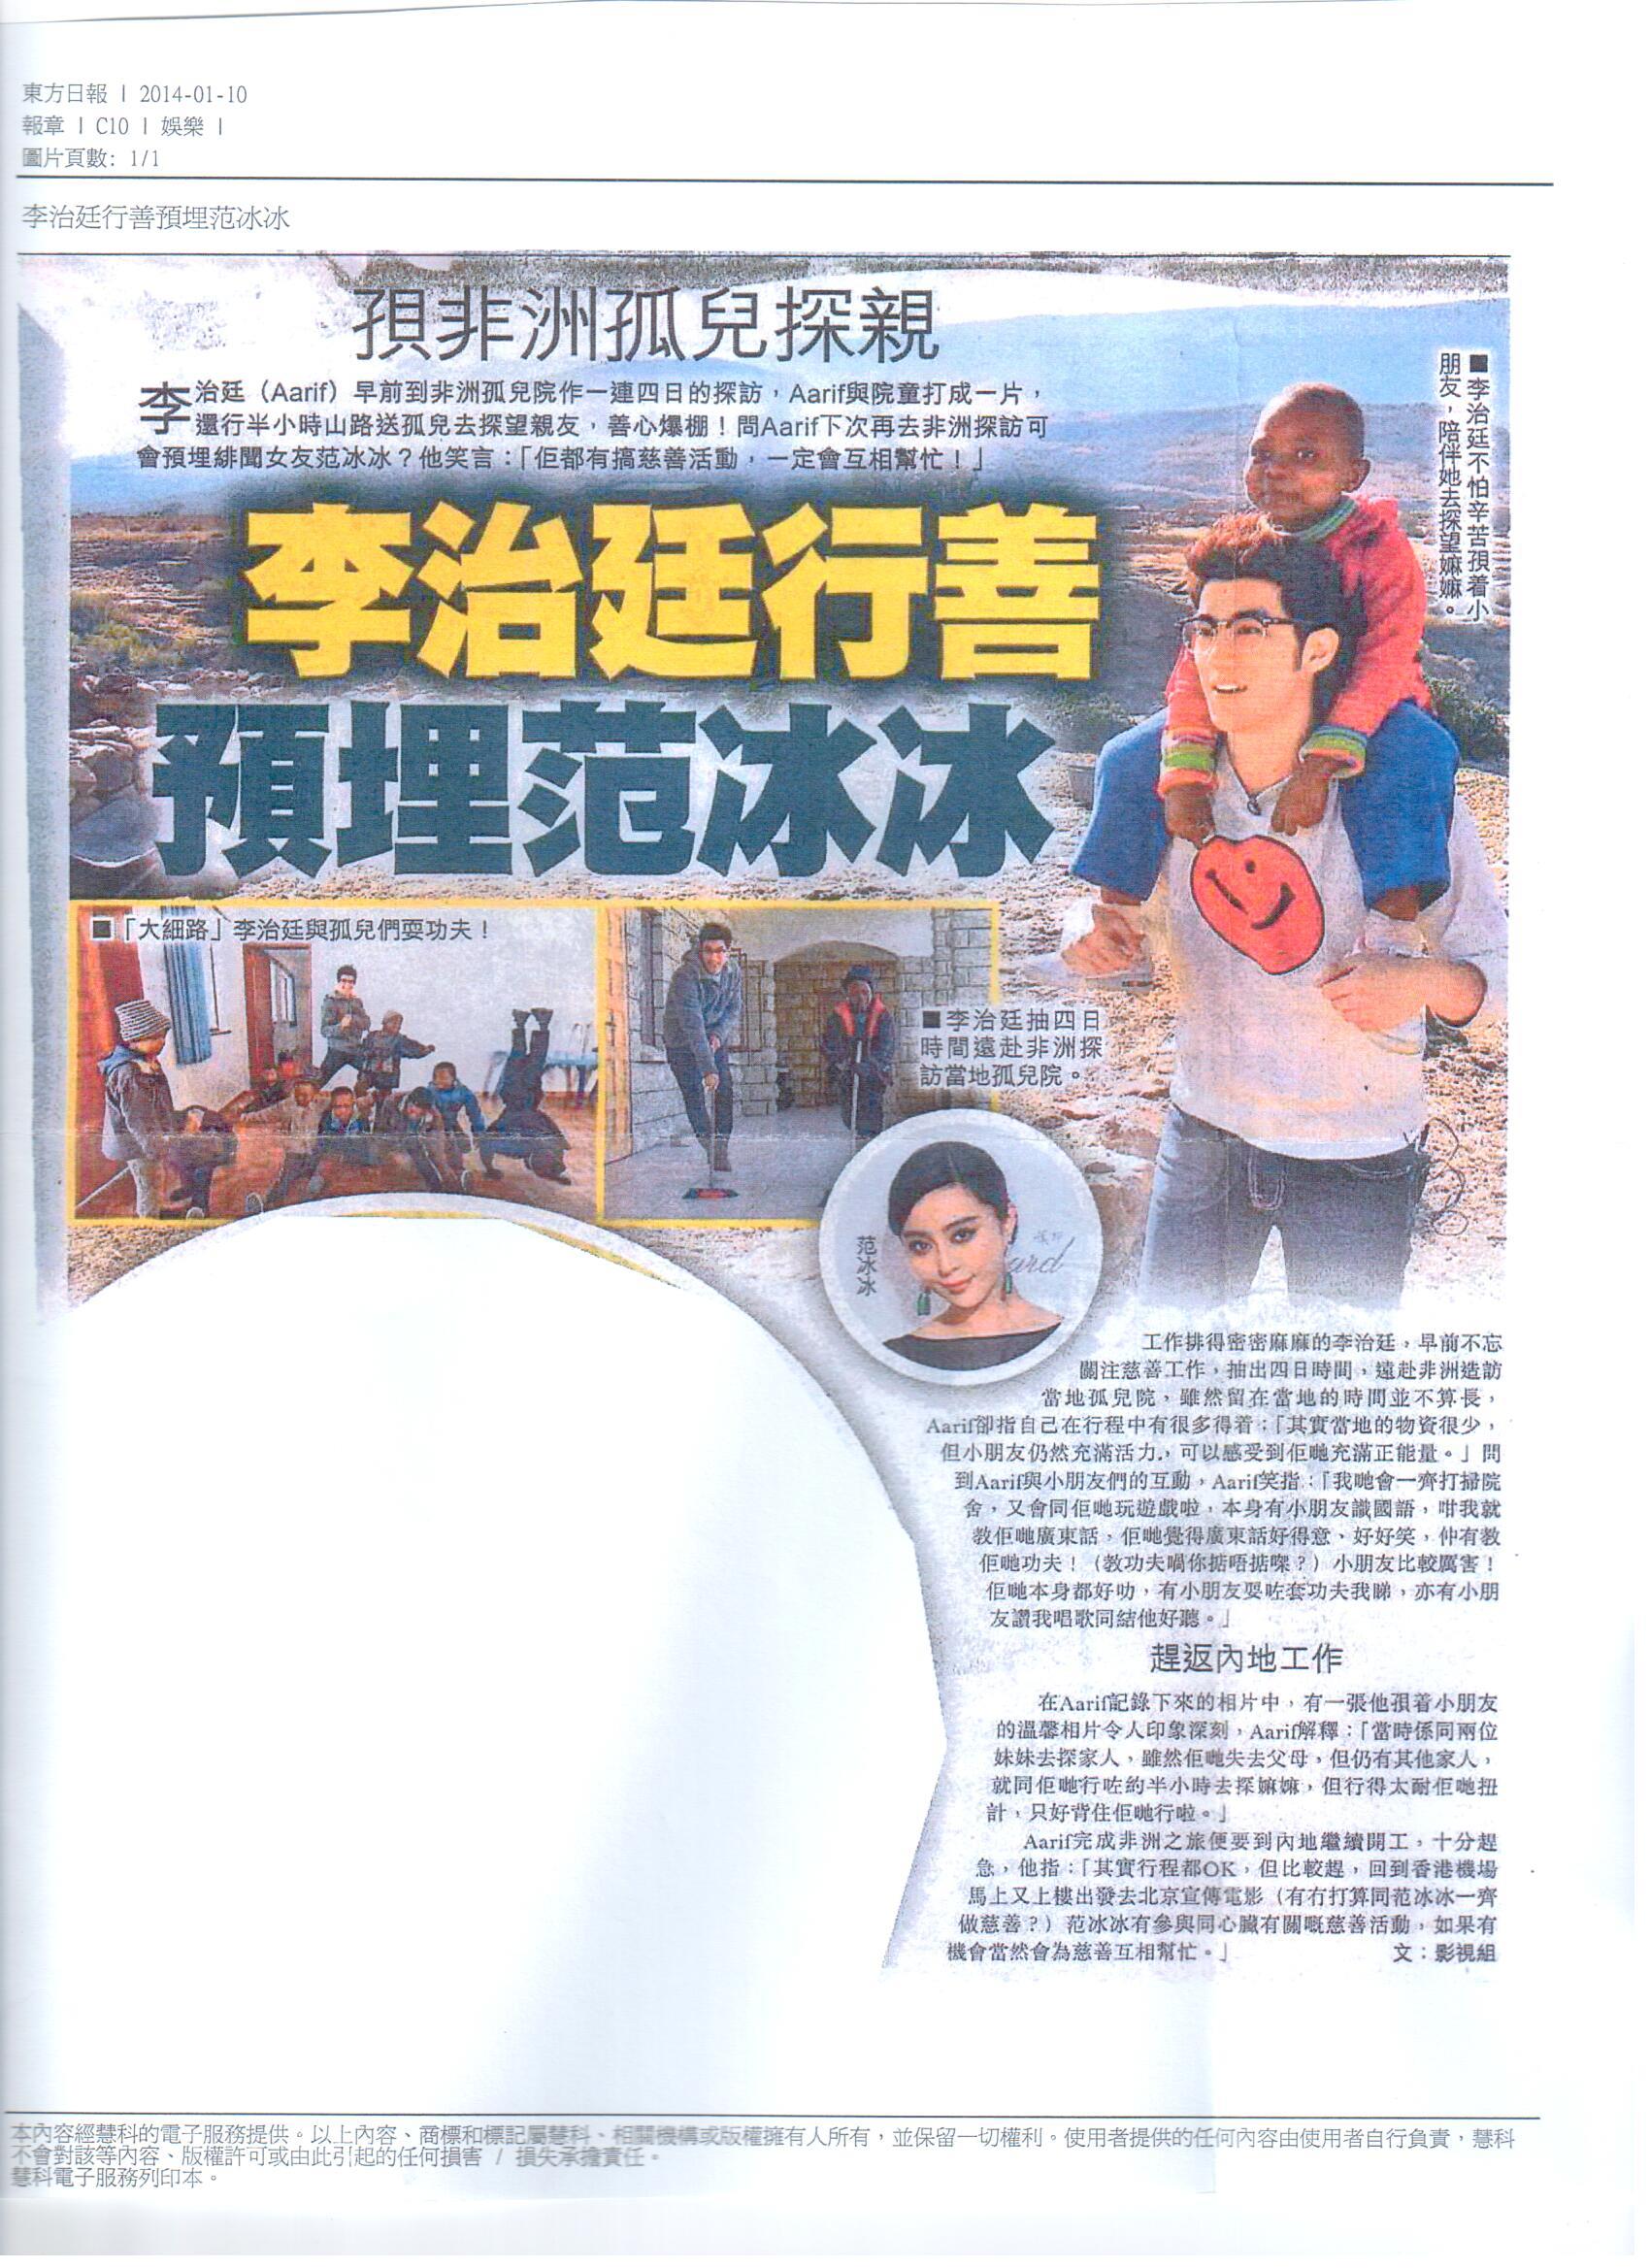 Hong Kong Oriental Daily - Hong Kong’s Oriental Daily News